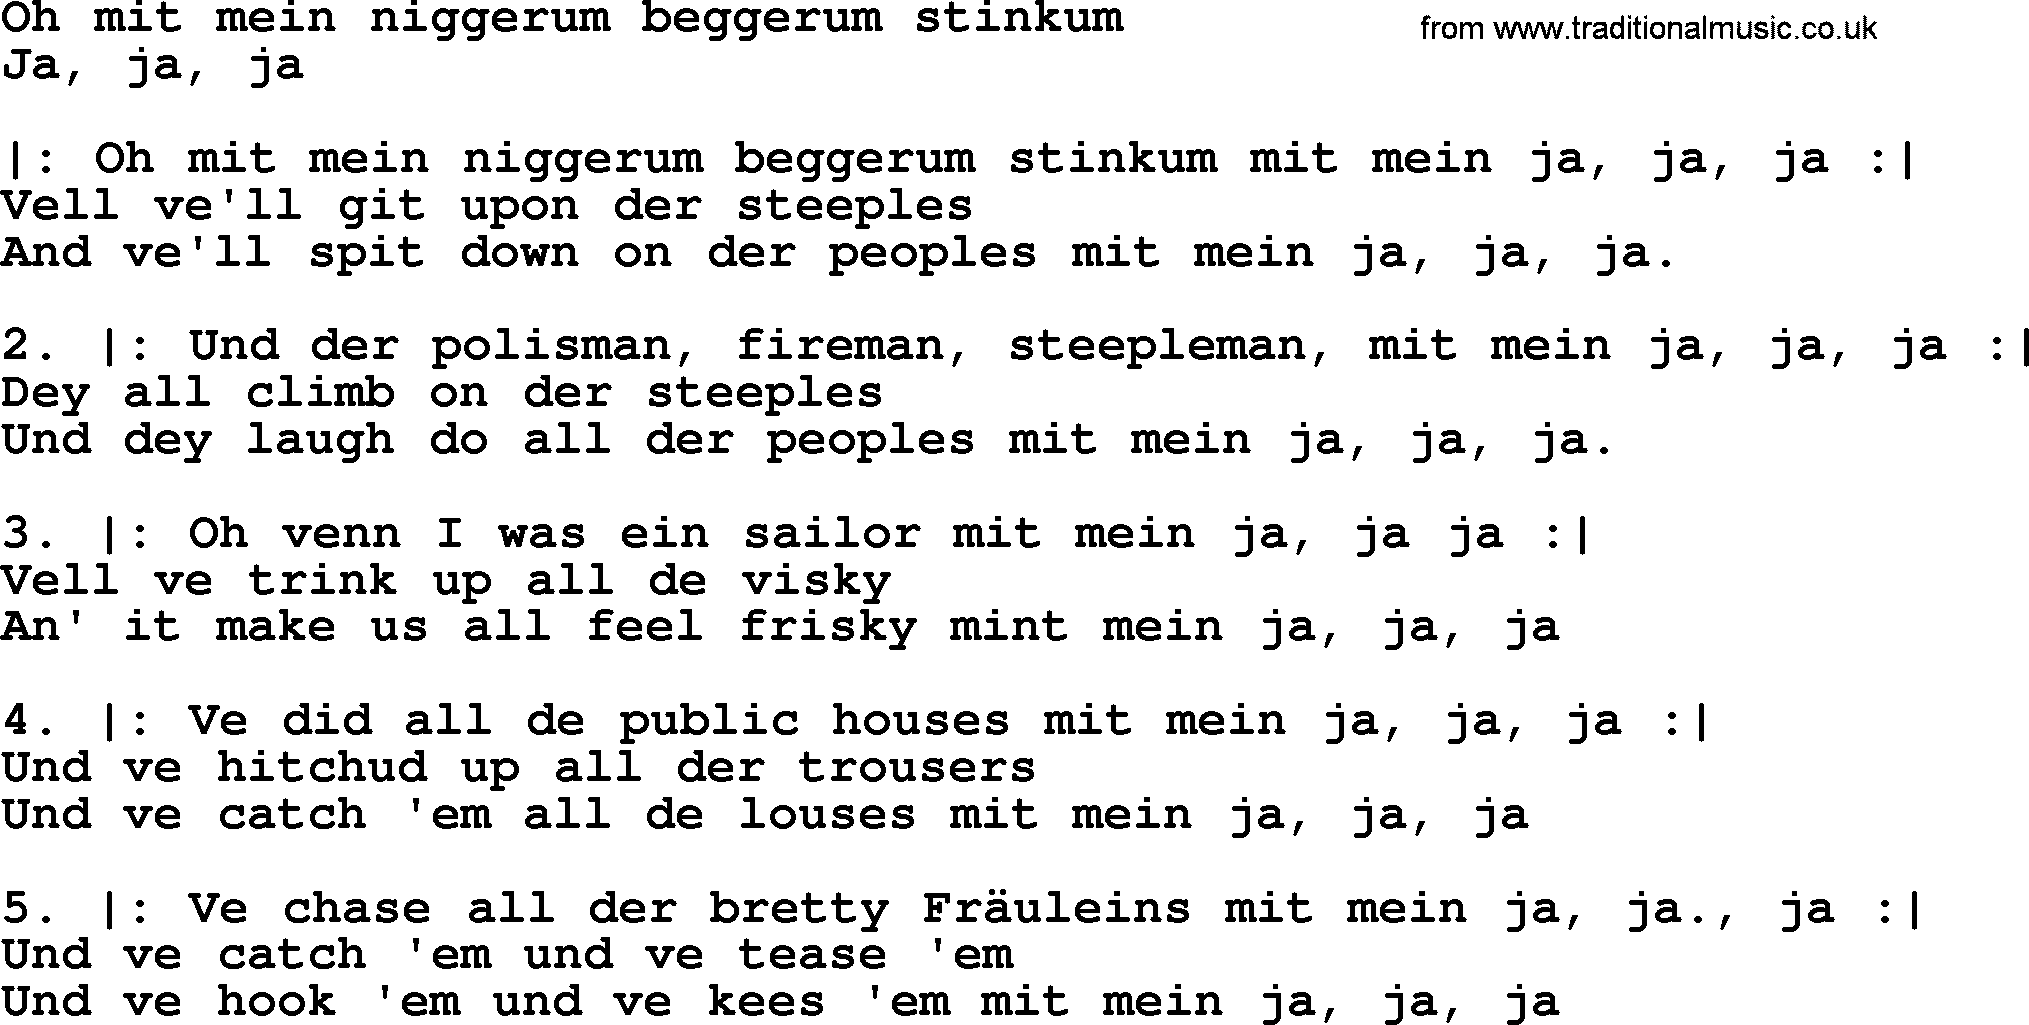 Sea Song or Shantie: Oh Mit Mein Niggerum Beggerum Stinkum, lyrics